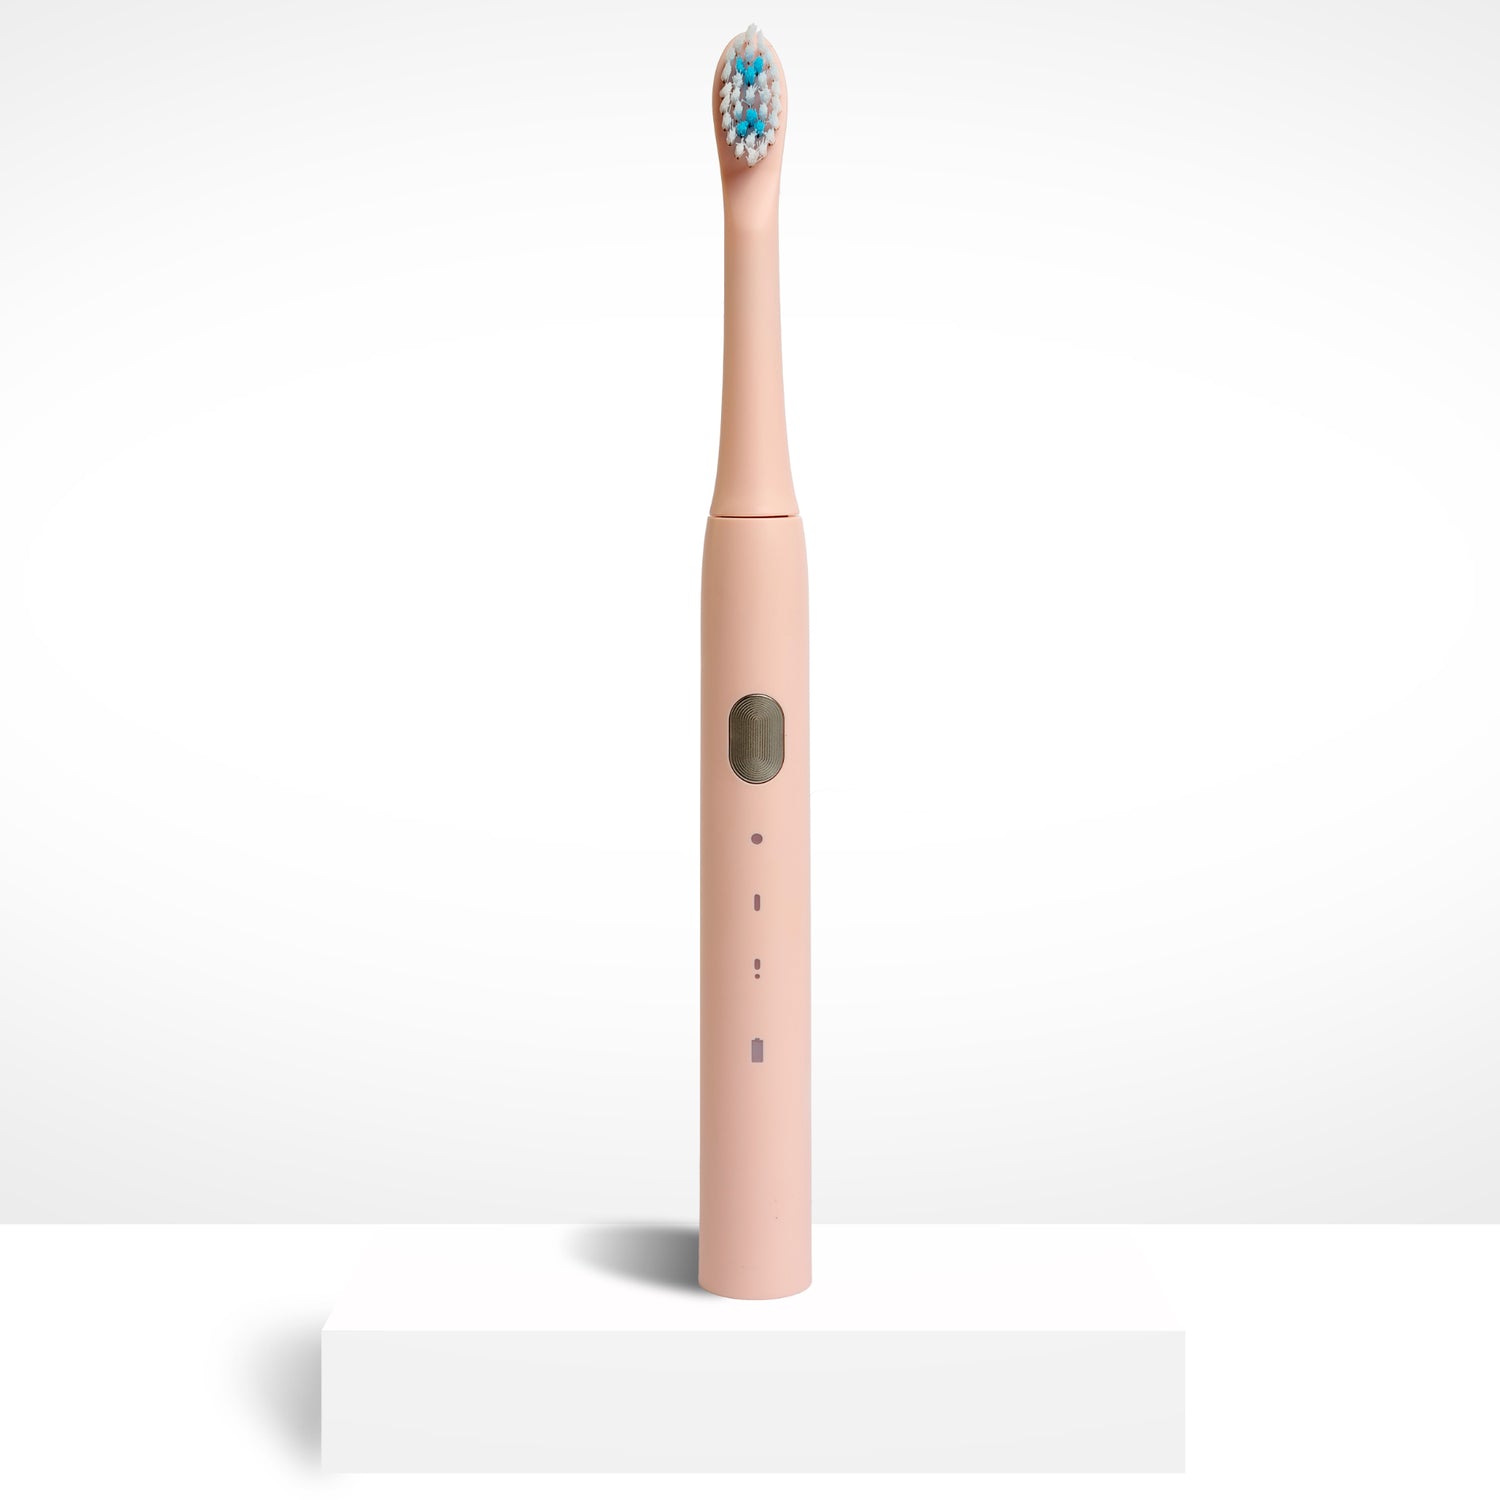 Электрическая зубная щетка Smiley Light Pink розовая купить электро зубную щетку купить электрическую зубную щетку купить зубную электрощетку купити електричну зубну щітку електрична зубна щітка купити